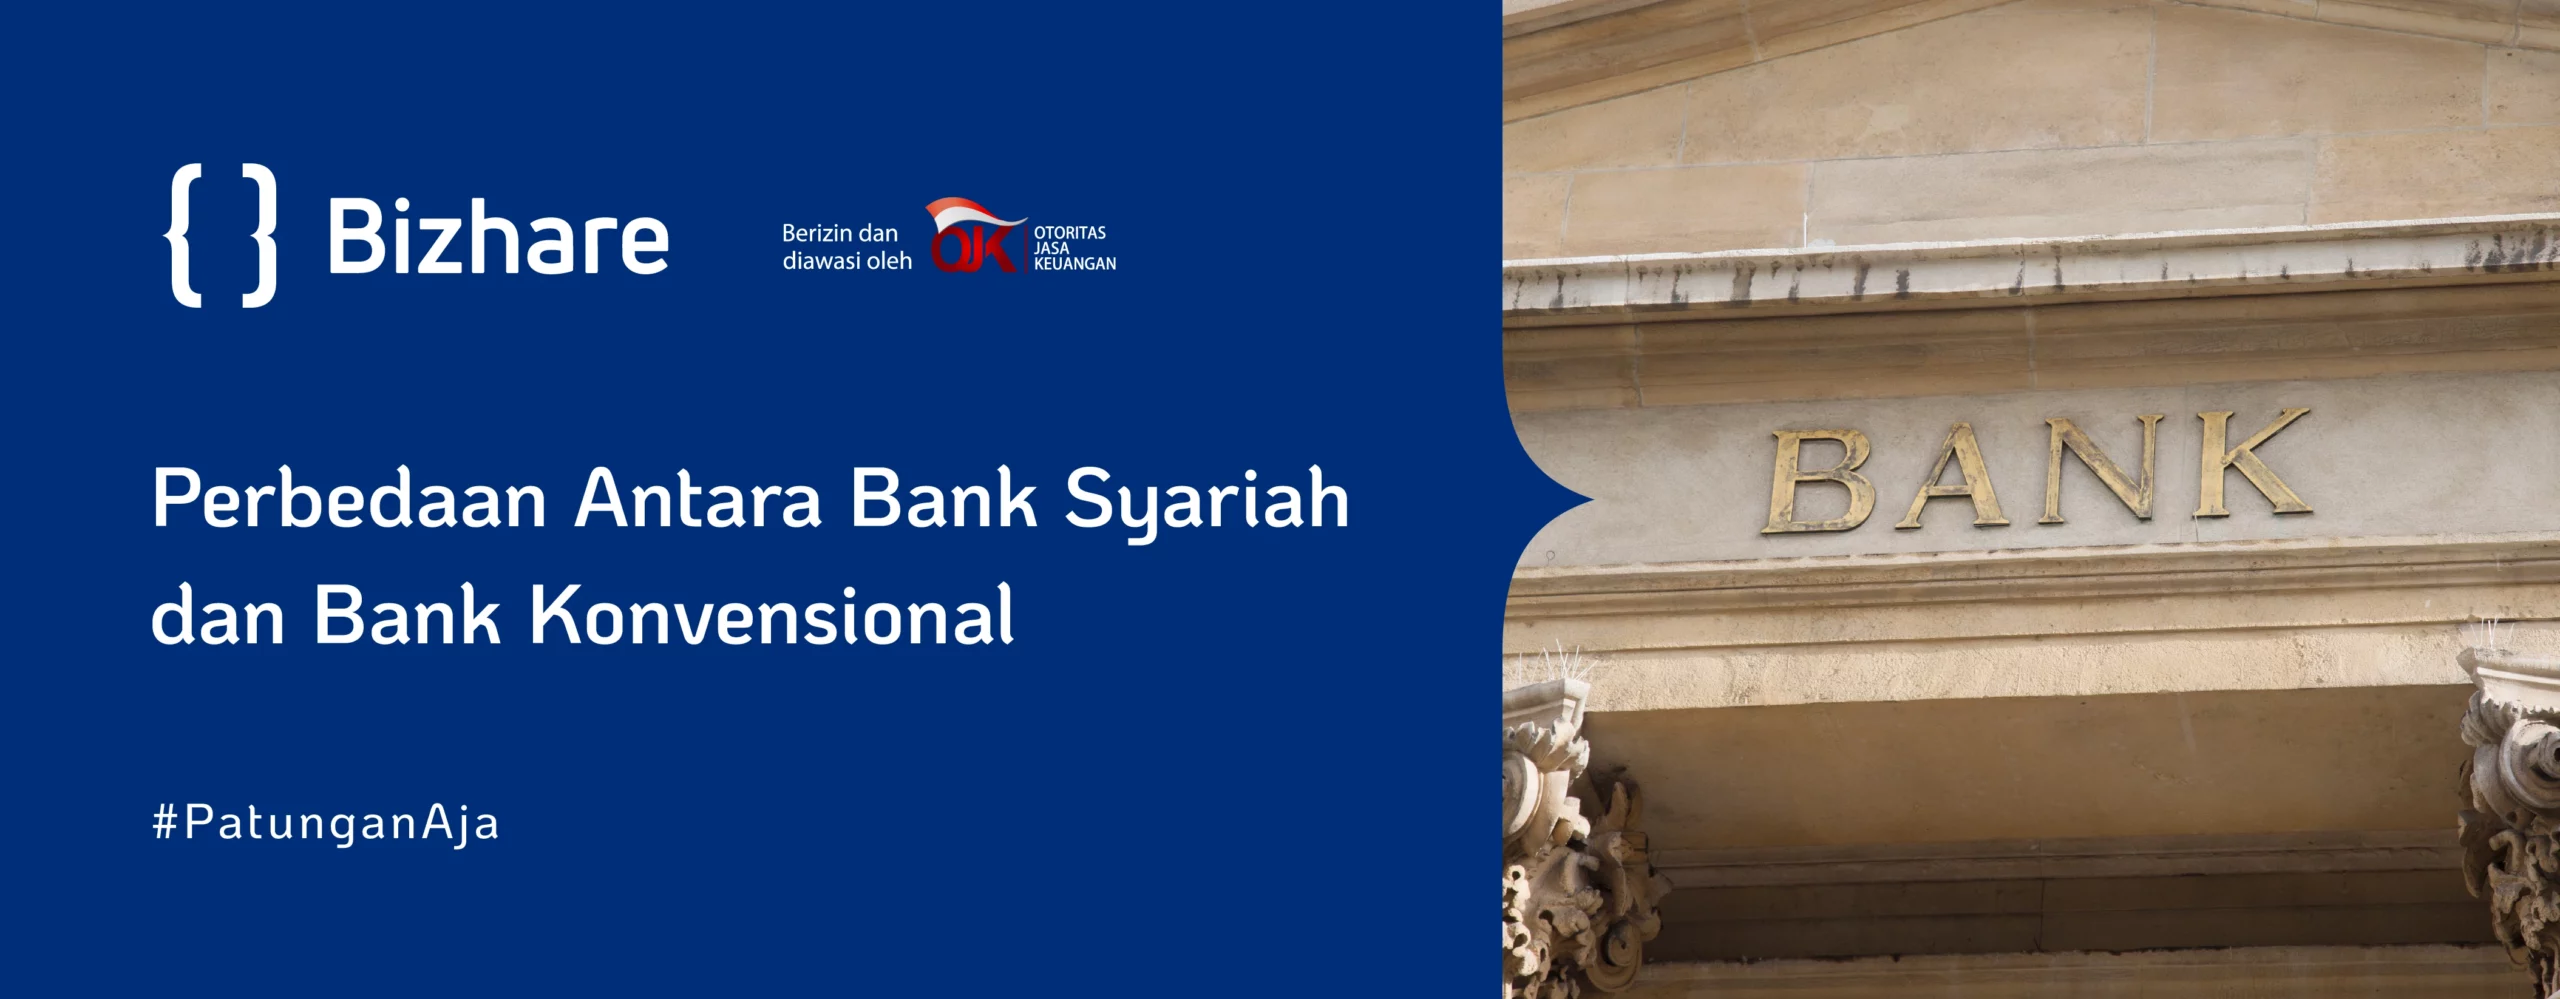 Perbedaan Antara Bank Syariah dan Bank Konvensional